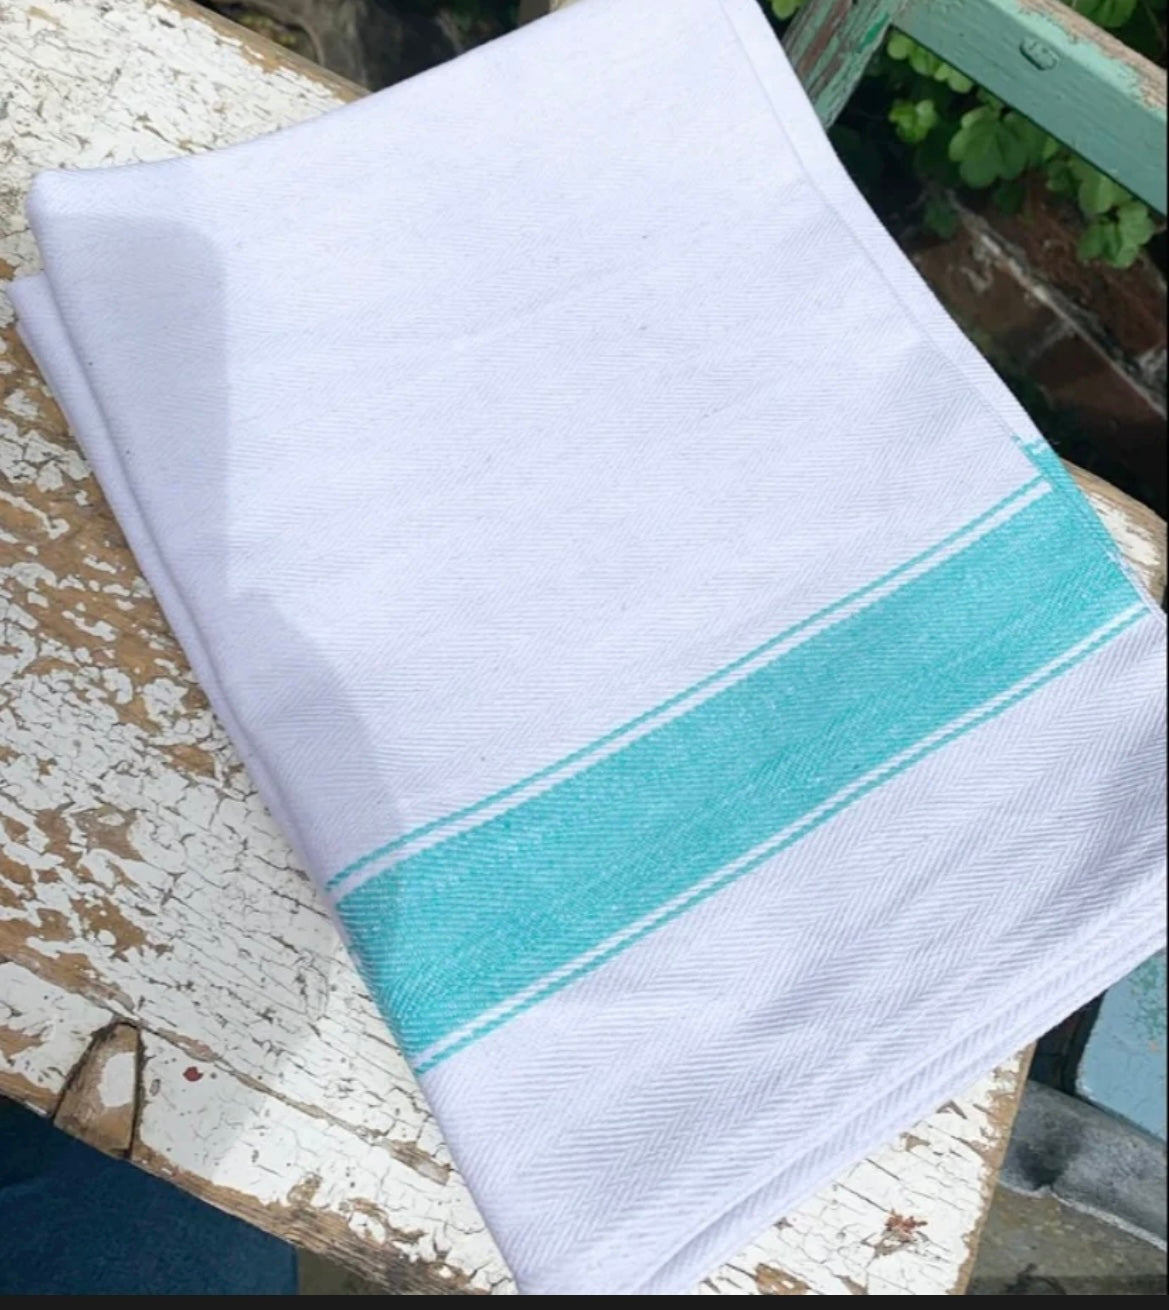 3 green striped tea towels - new